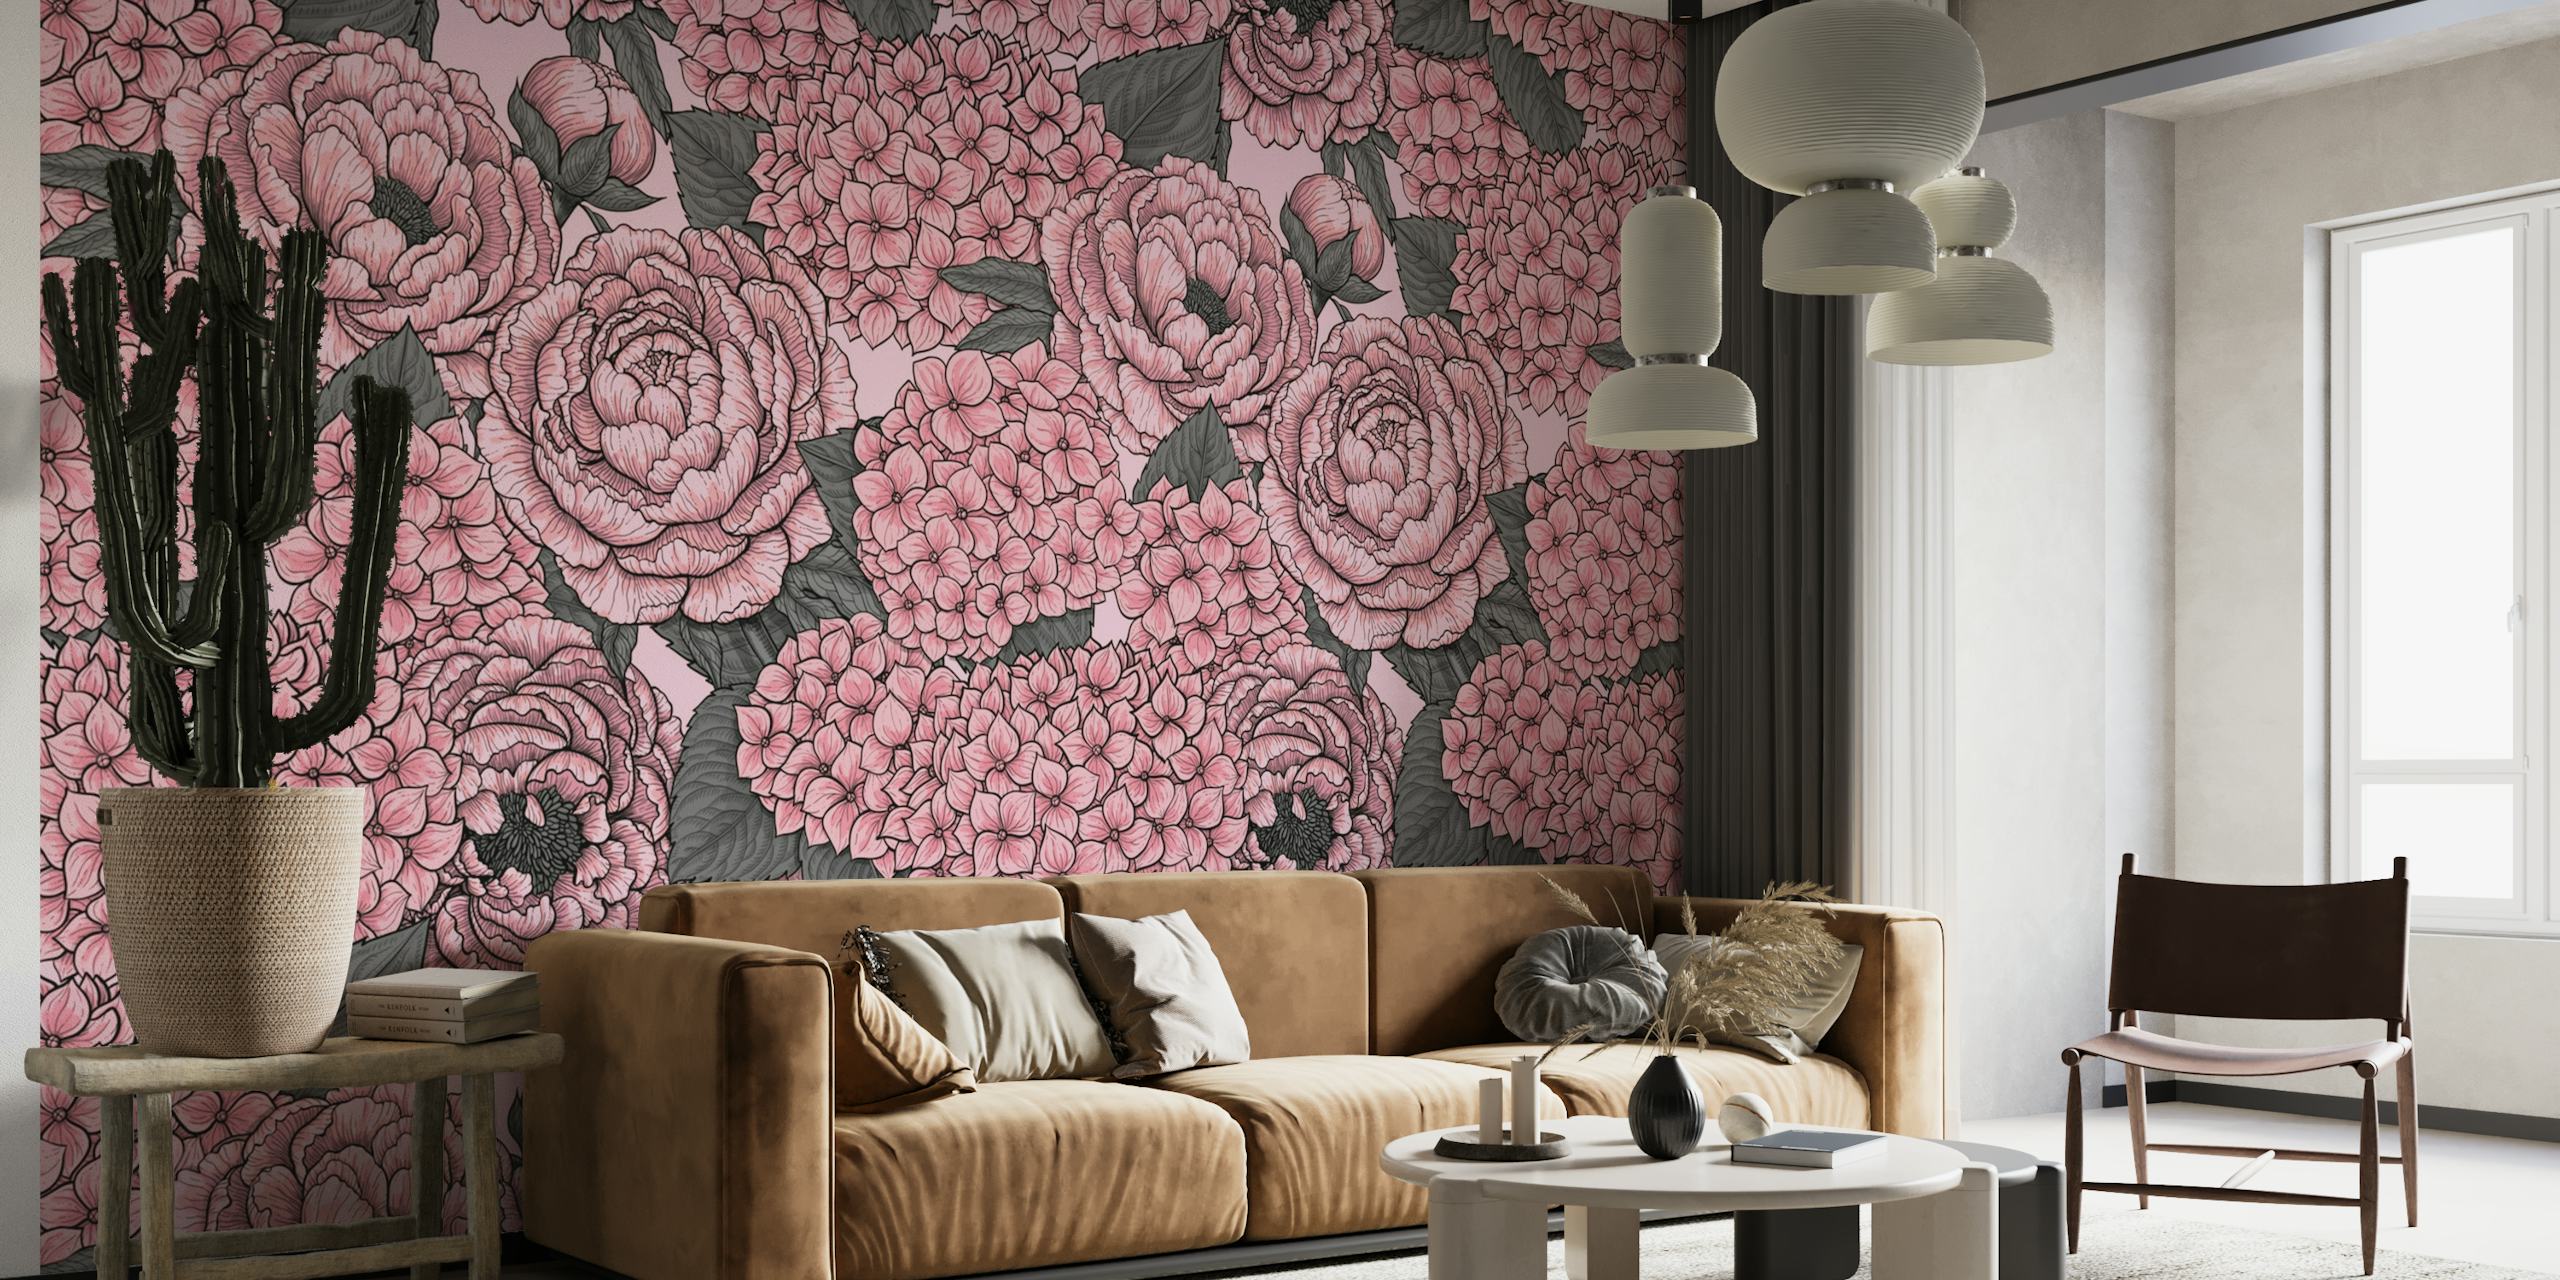 Fotomural de peonías y hortensias rosas sobre fondo texturizado